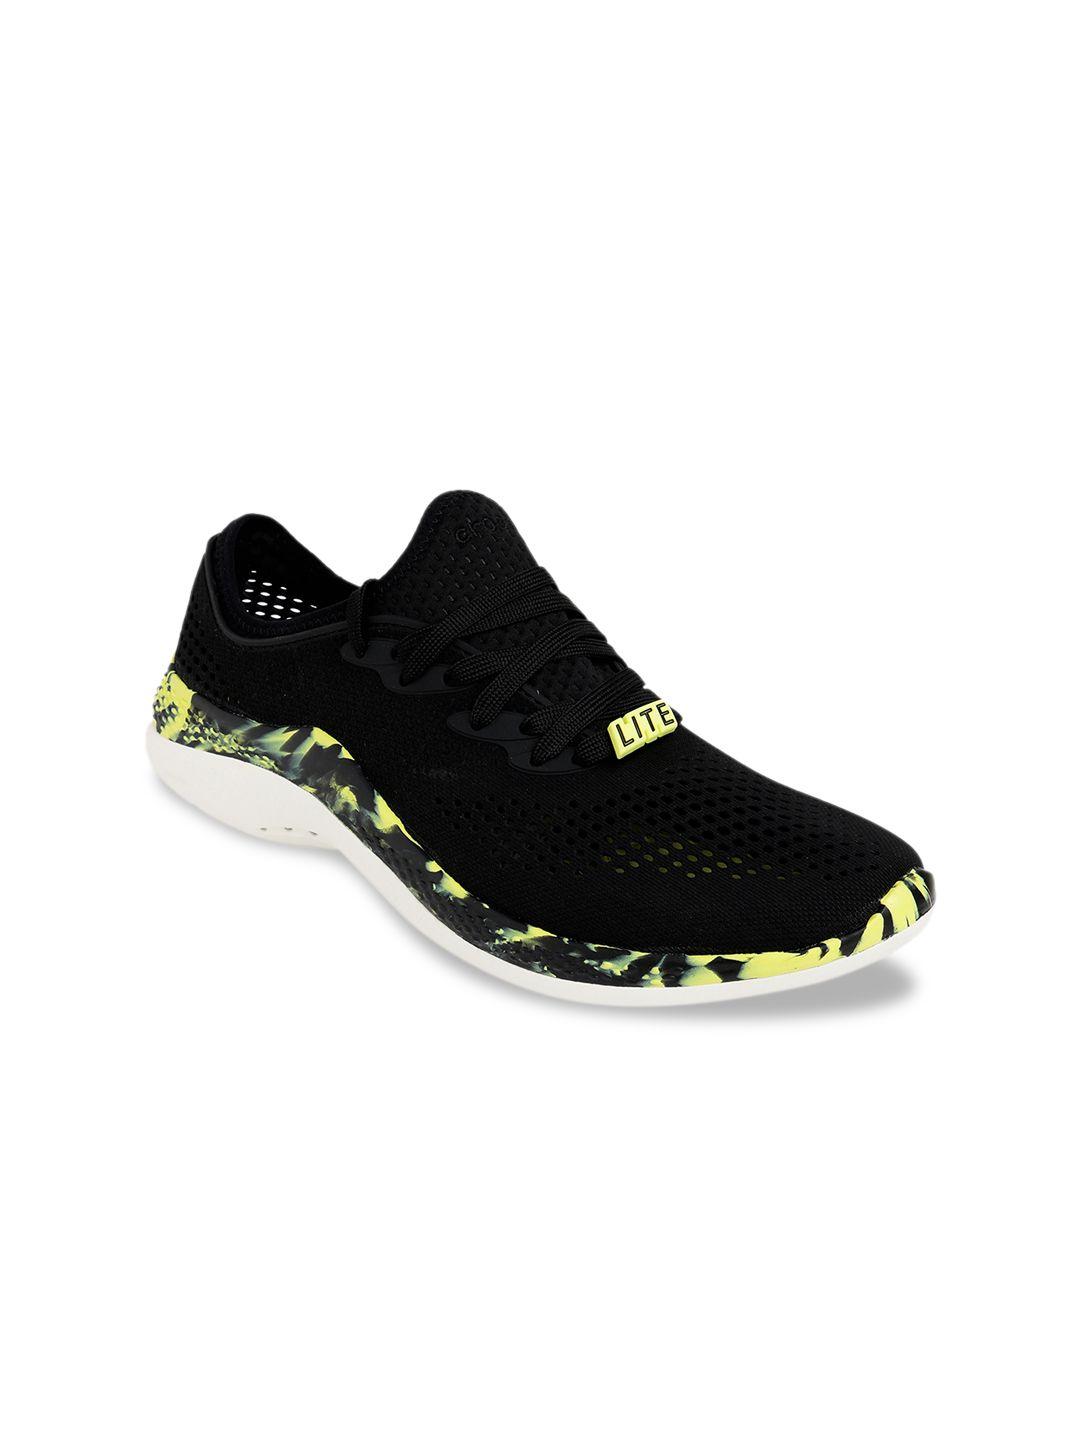 crocs men black printed sneakers